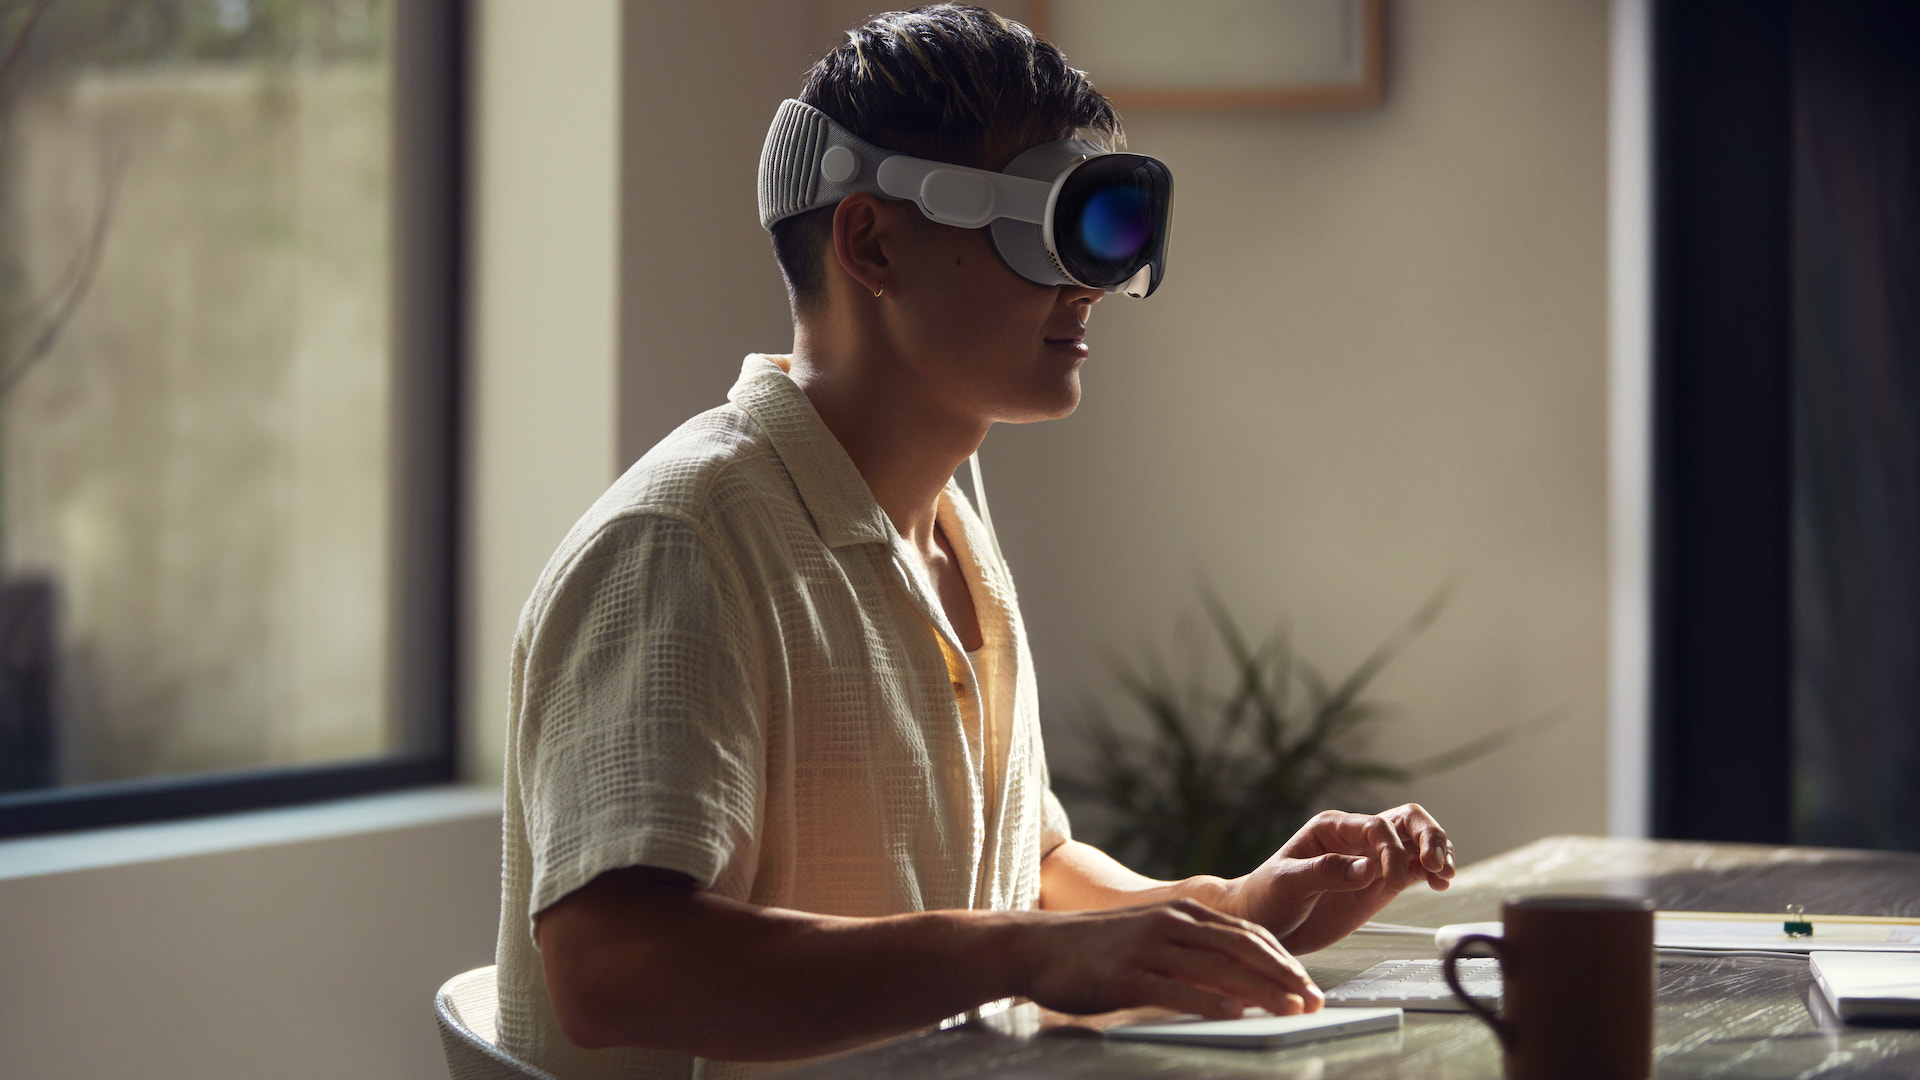 Headset Apple Vision Pro, um wearable de realidade aumentada que coloca aplicativos e ambientes digitais no seu mundo real.